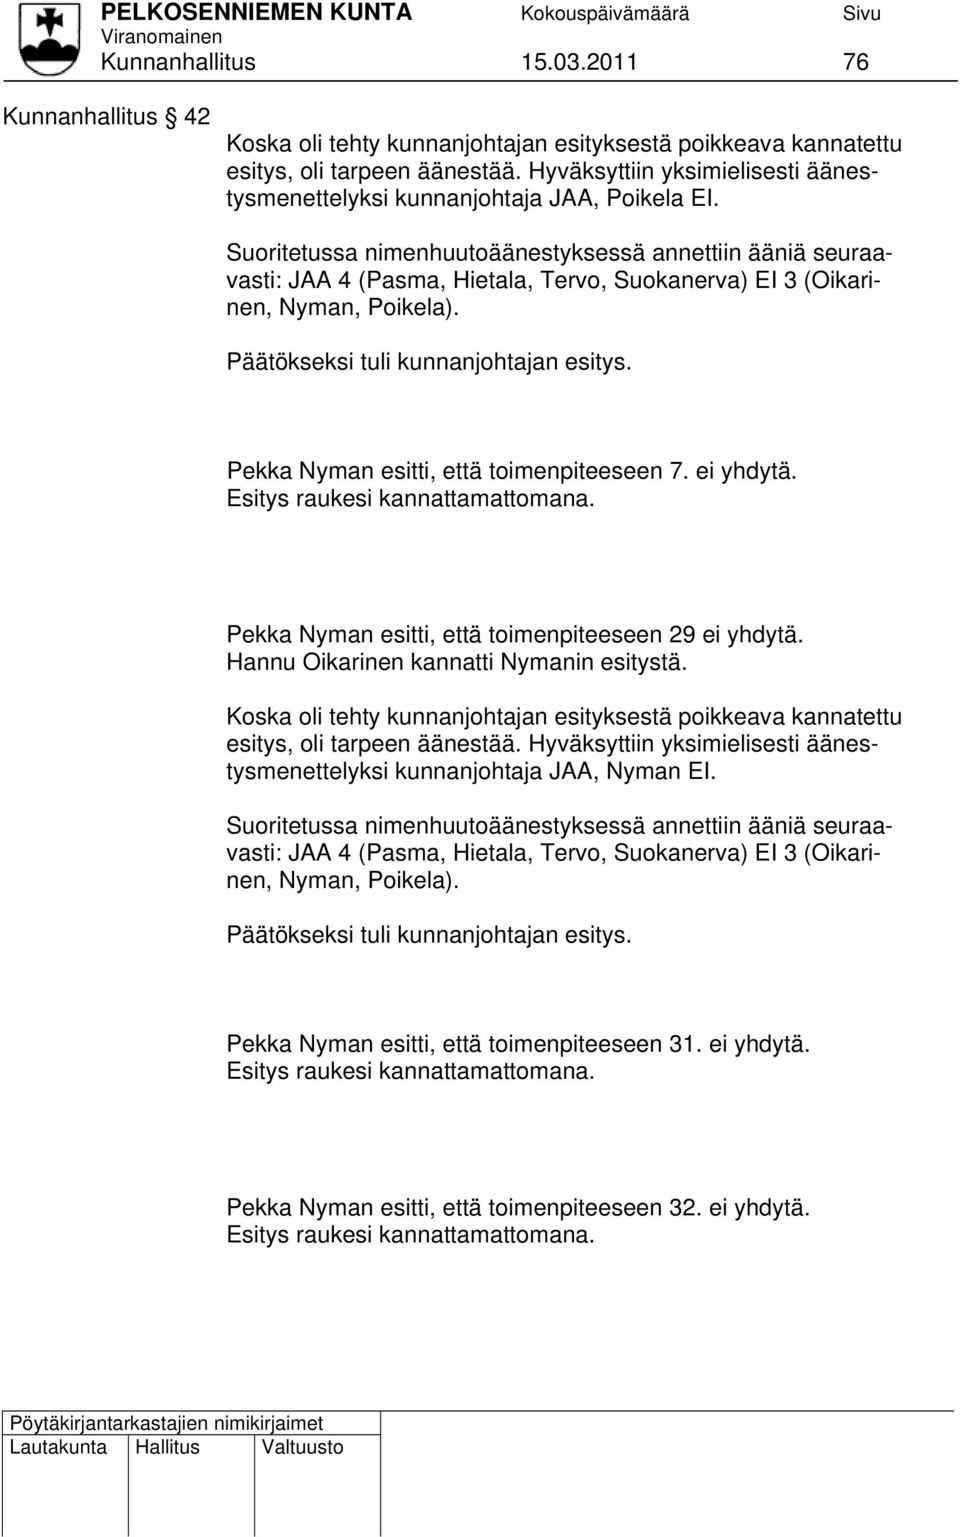 Suoritetussa nimenhuutoäänestyksessä annettiin ääniä seuraavasti: JAA 4 (Pasma, Hietala, Tervo, Suokanerva) EI 3 (Oikarinen, Nyman, Poikela). Päätökseksi tuli kunnanjohtajan esitys.